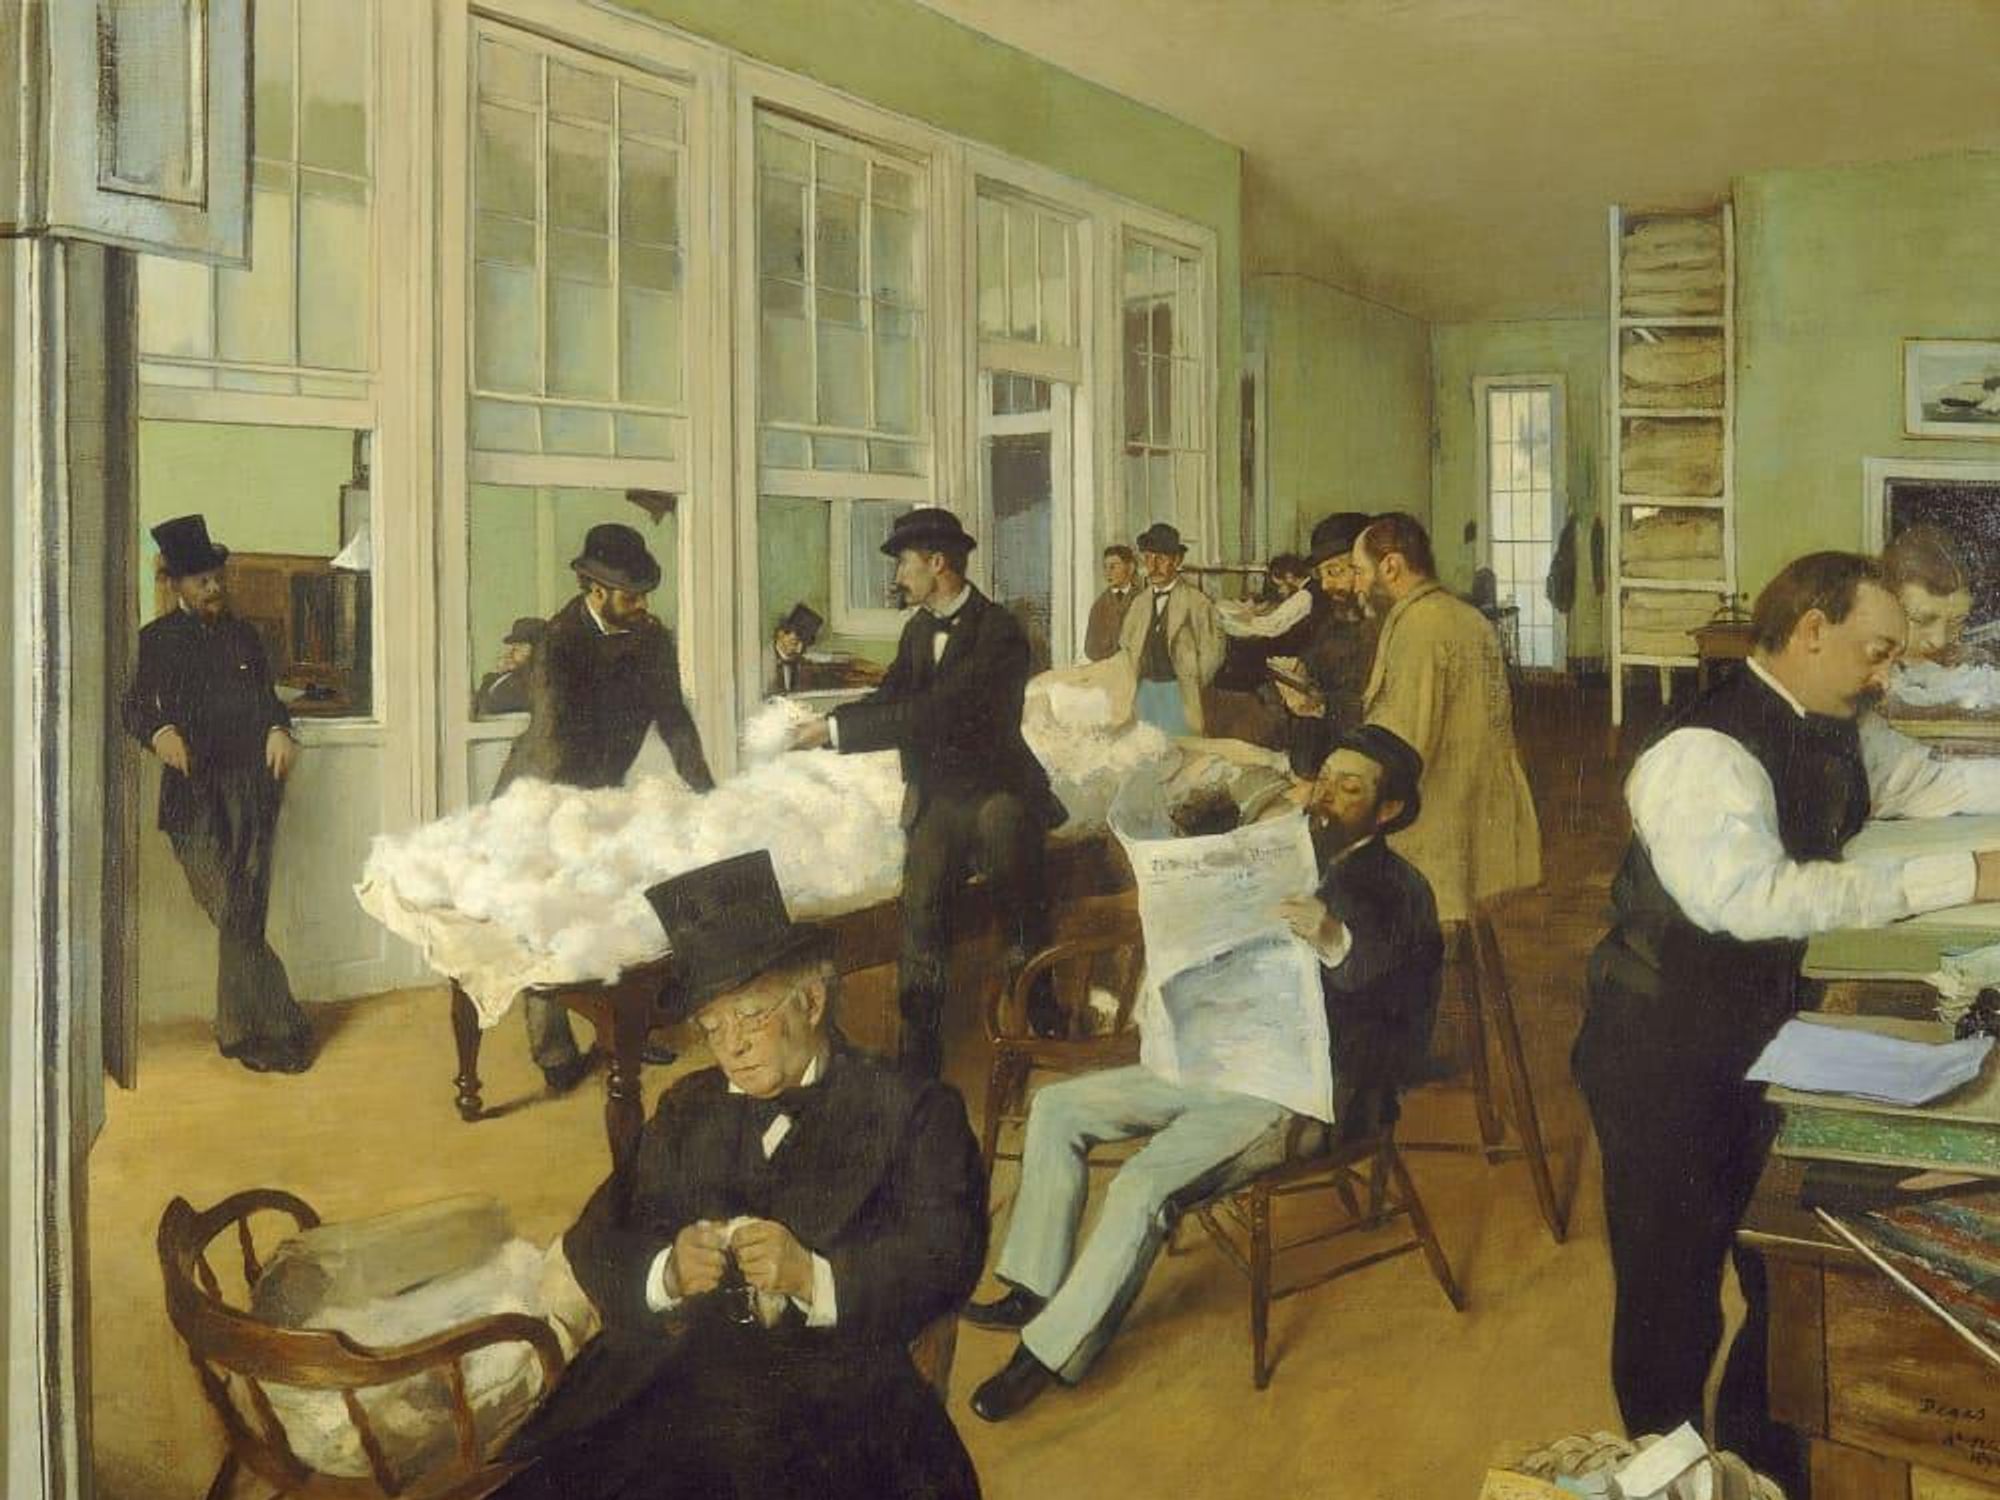 Edgar Degas, A Cotton Office in New Orleans, 1873, oil on canvas, Musée des Beaux-Arts de Pau, France